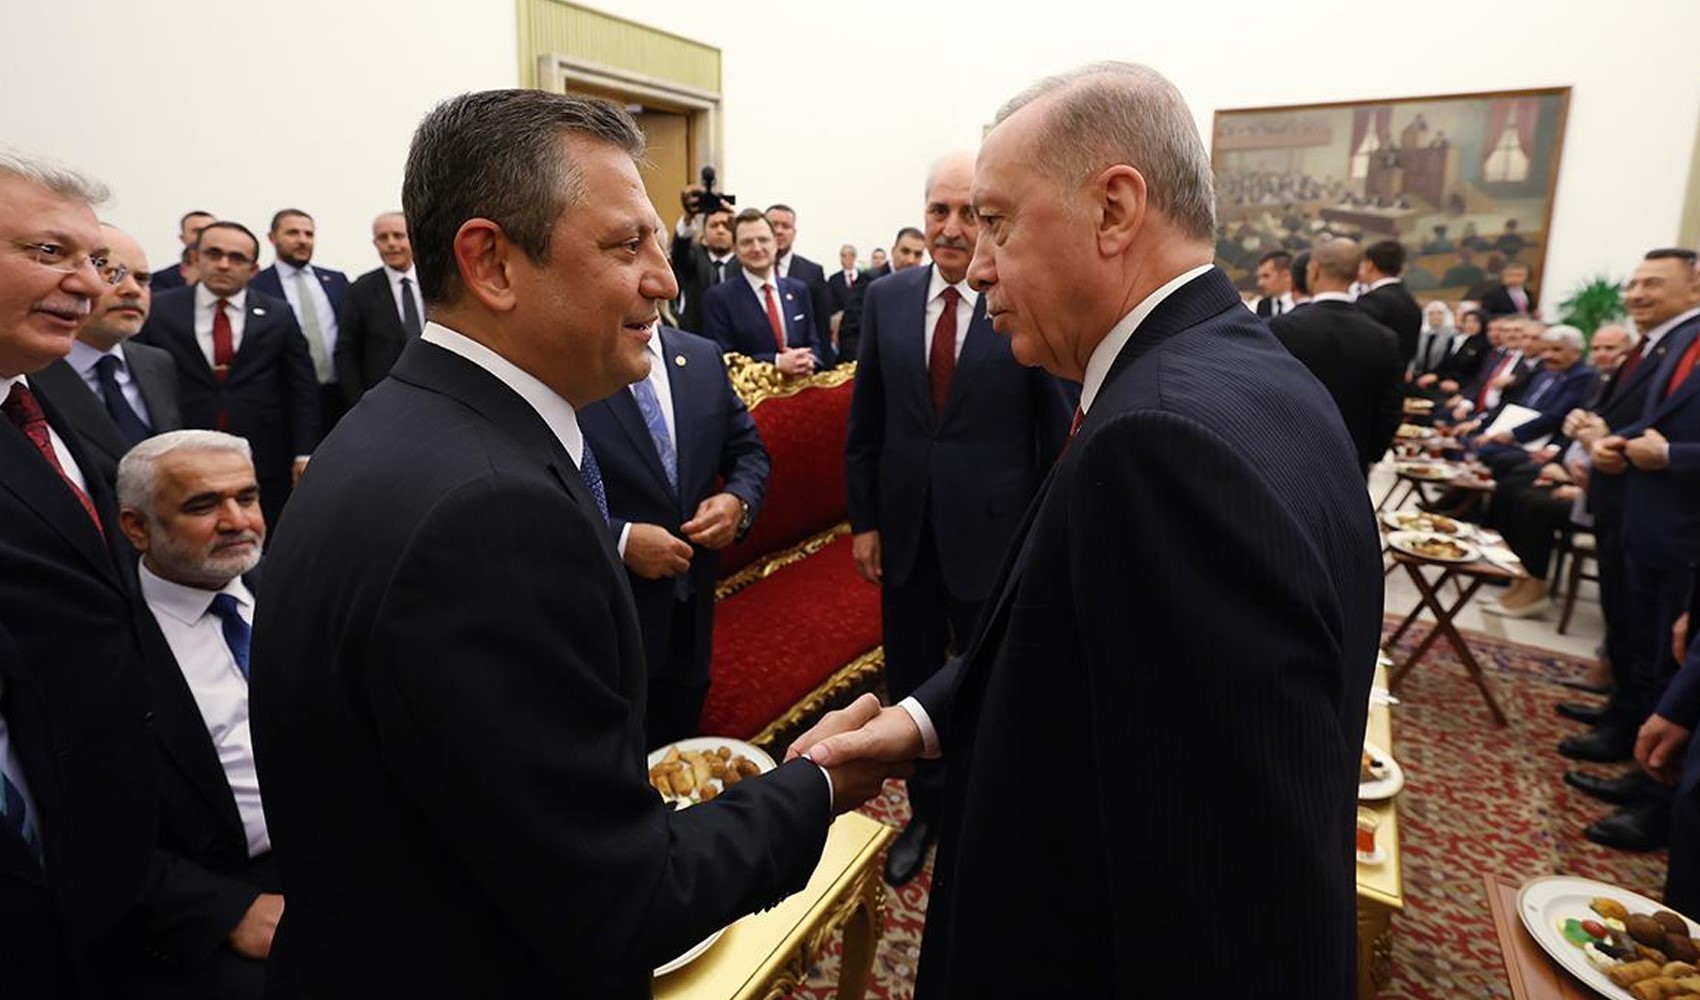 Özel ve Erdoğan ‘yeni anayasa’ dışında ne konuşacak? CHP’li kurmaylar açıkladı…